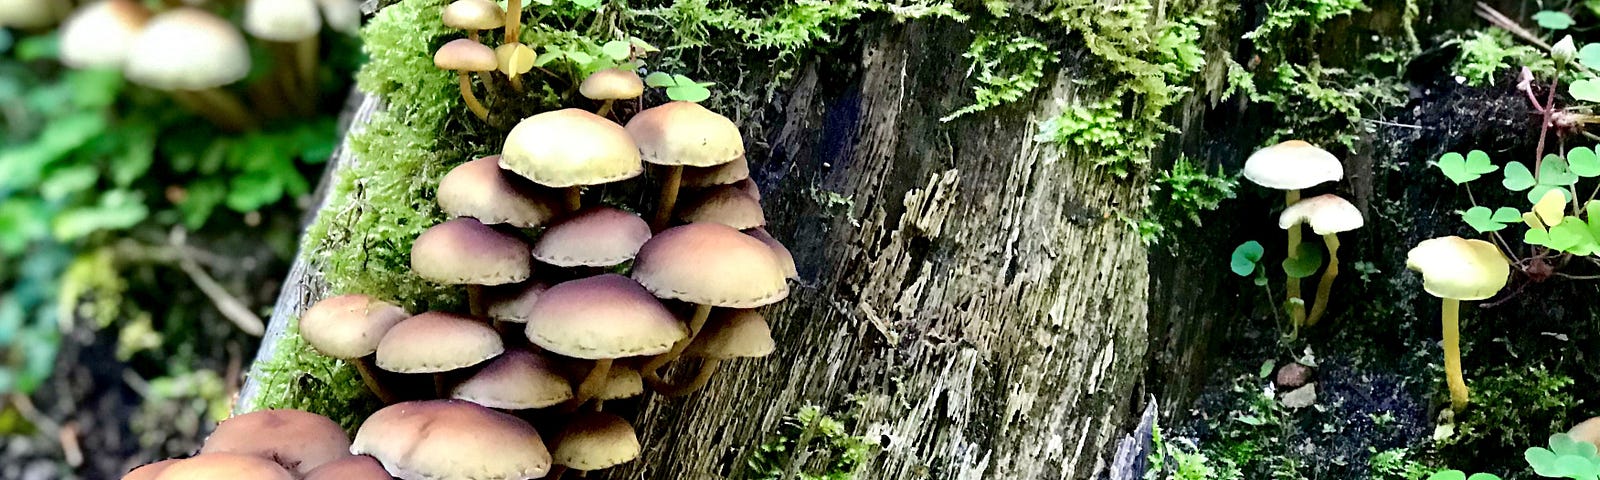 Mushrooms on tree bark.